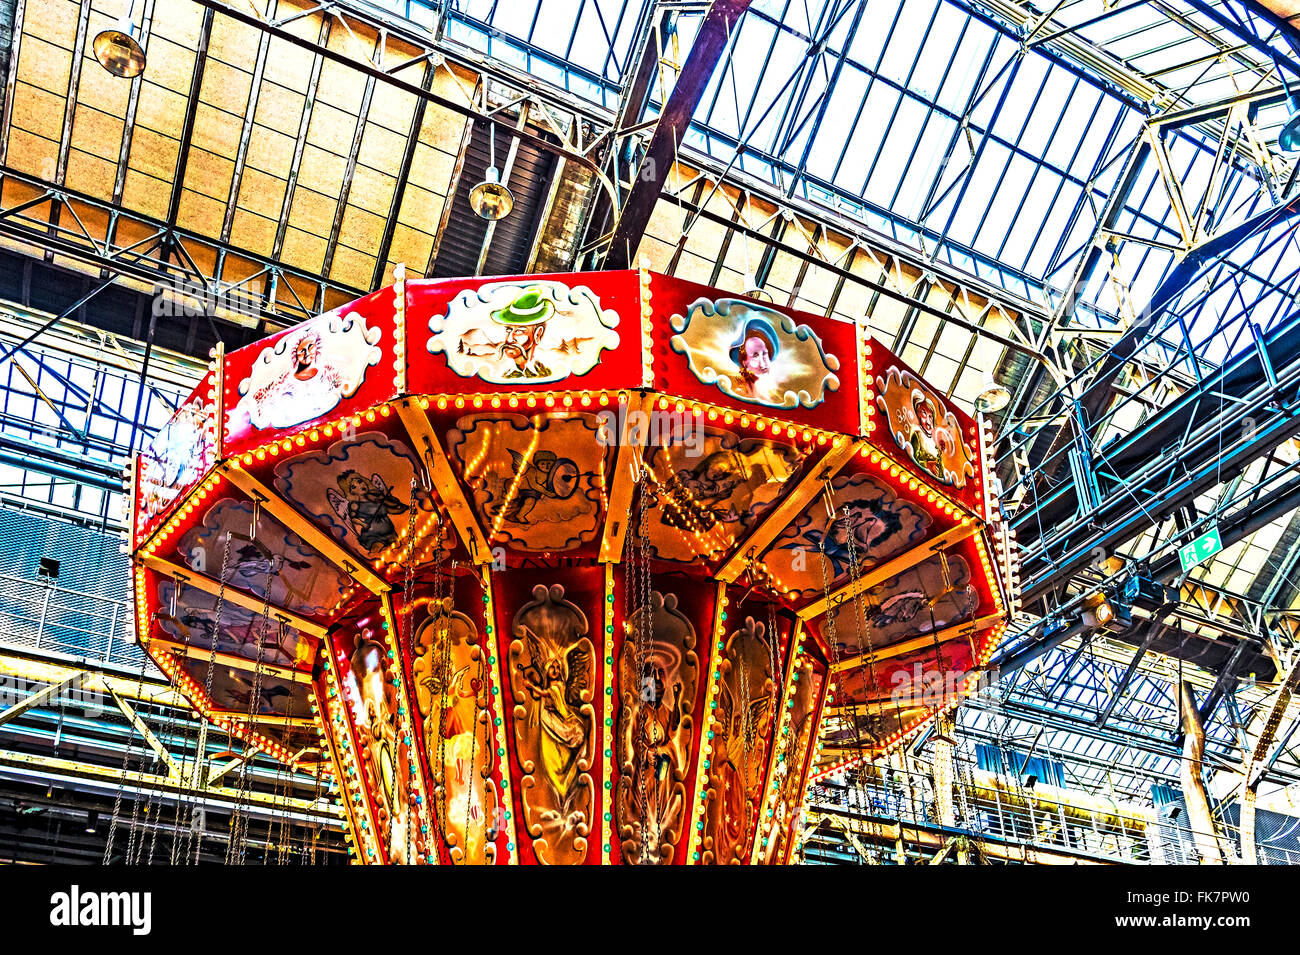 Tiovivo de una feria histórica en Alemania; Karussell auf einem historischen Jahrmarkt Foto de stock